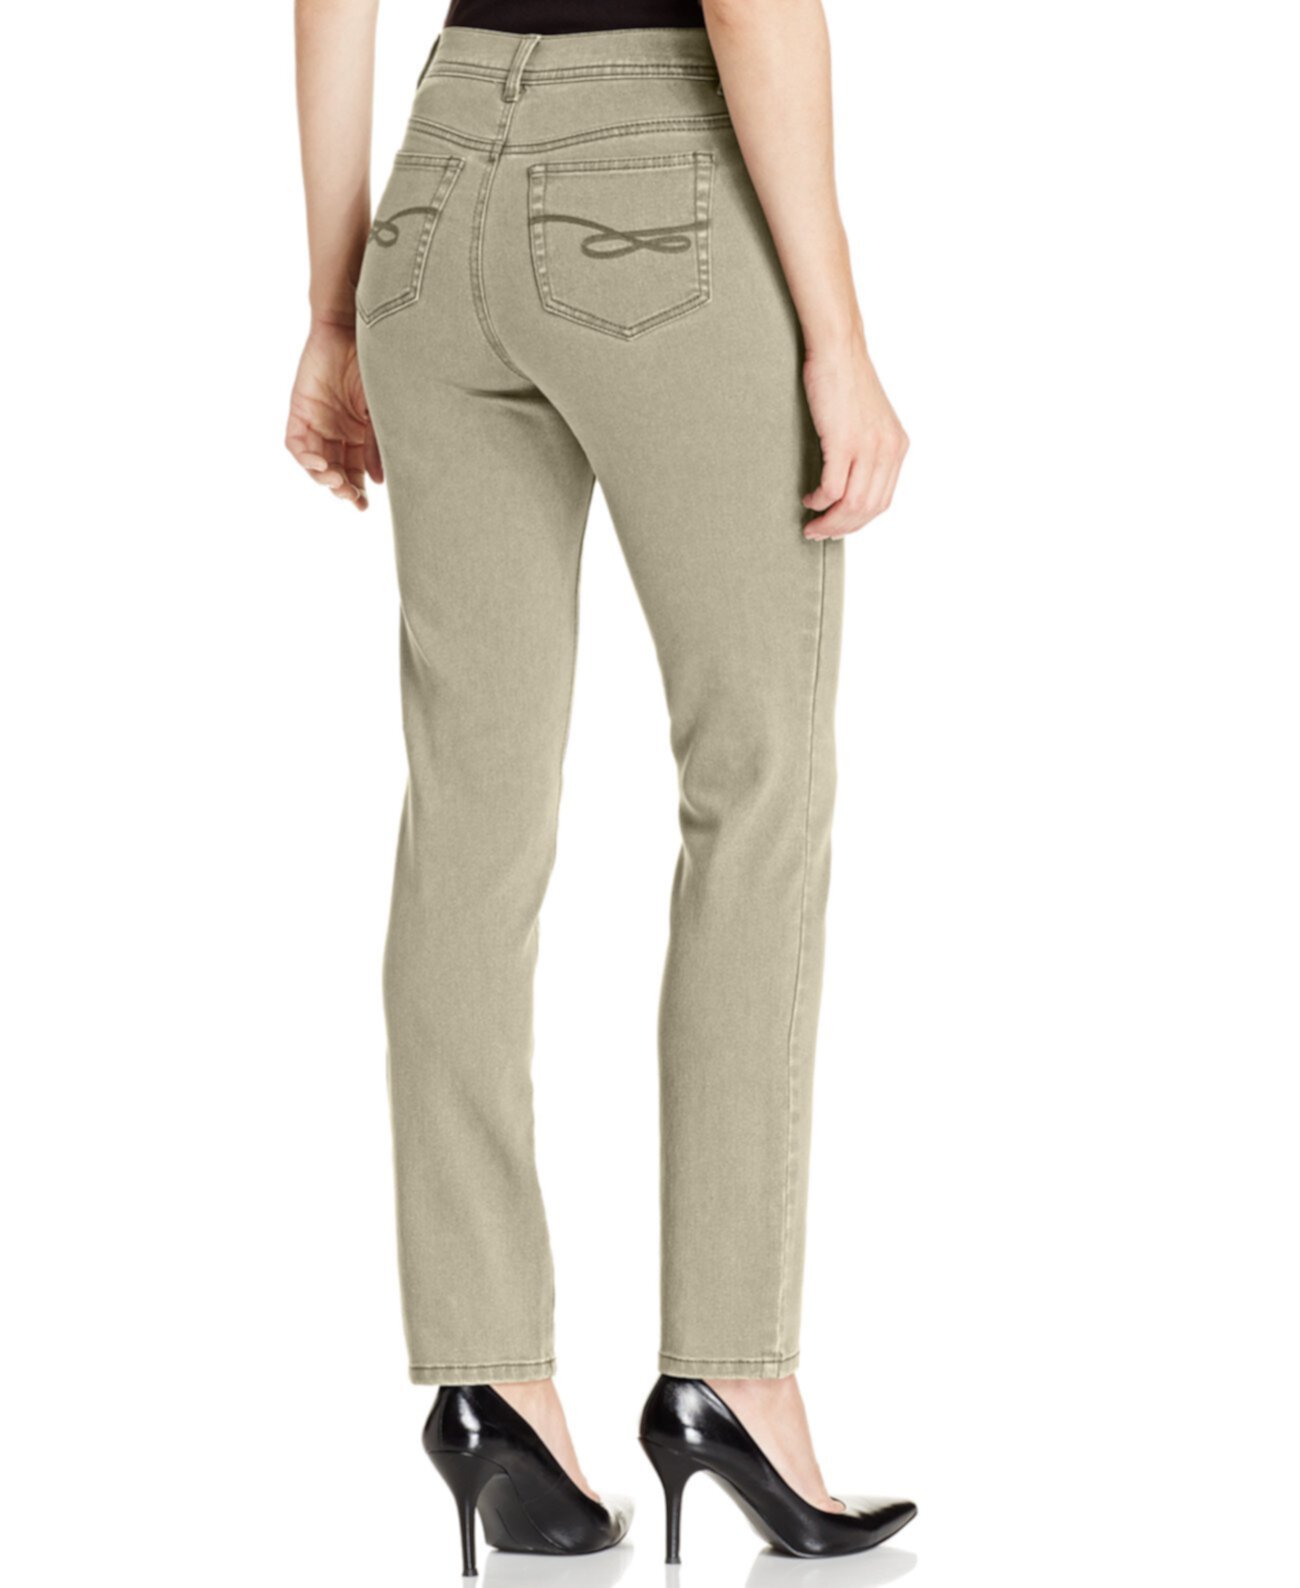 Узкие джинсы-скинни Petite-Control, созданные для Macy's Style & Co